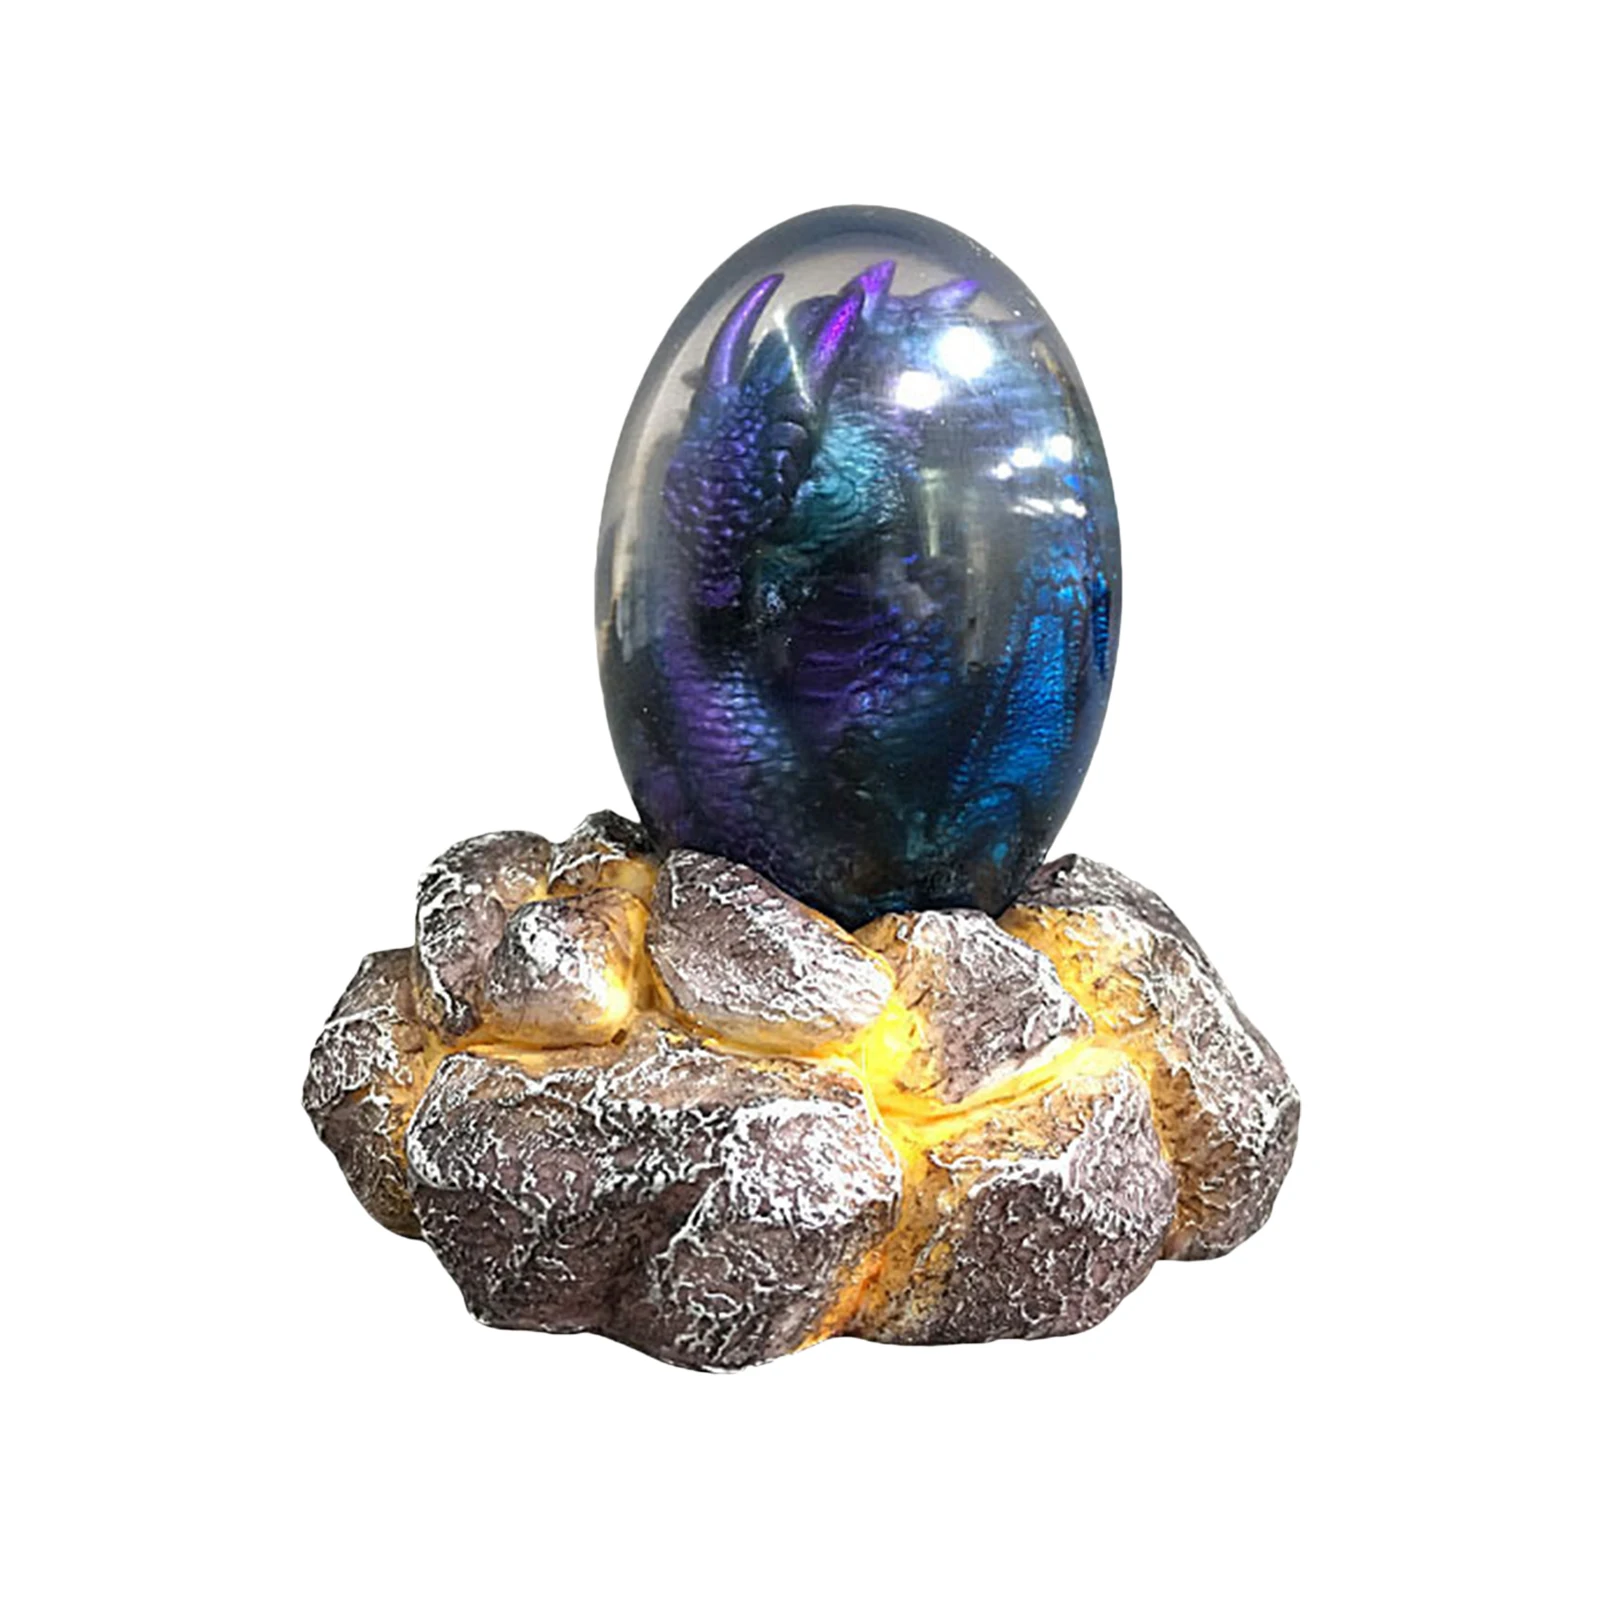 

Кристаллическая прозрачная полимерная статуя Дракон яйцо Лава Динозавр яйцо сувенирные Смола светящаяся игрушка домашний Декор подарок